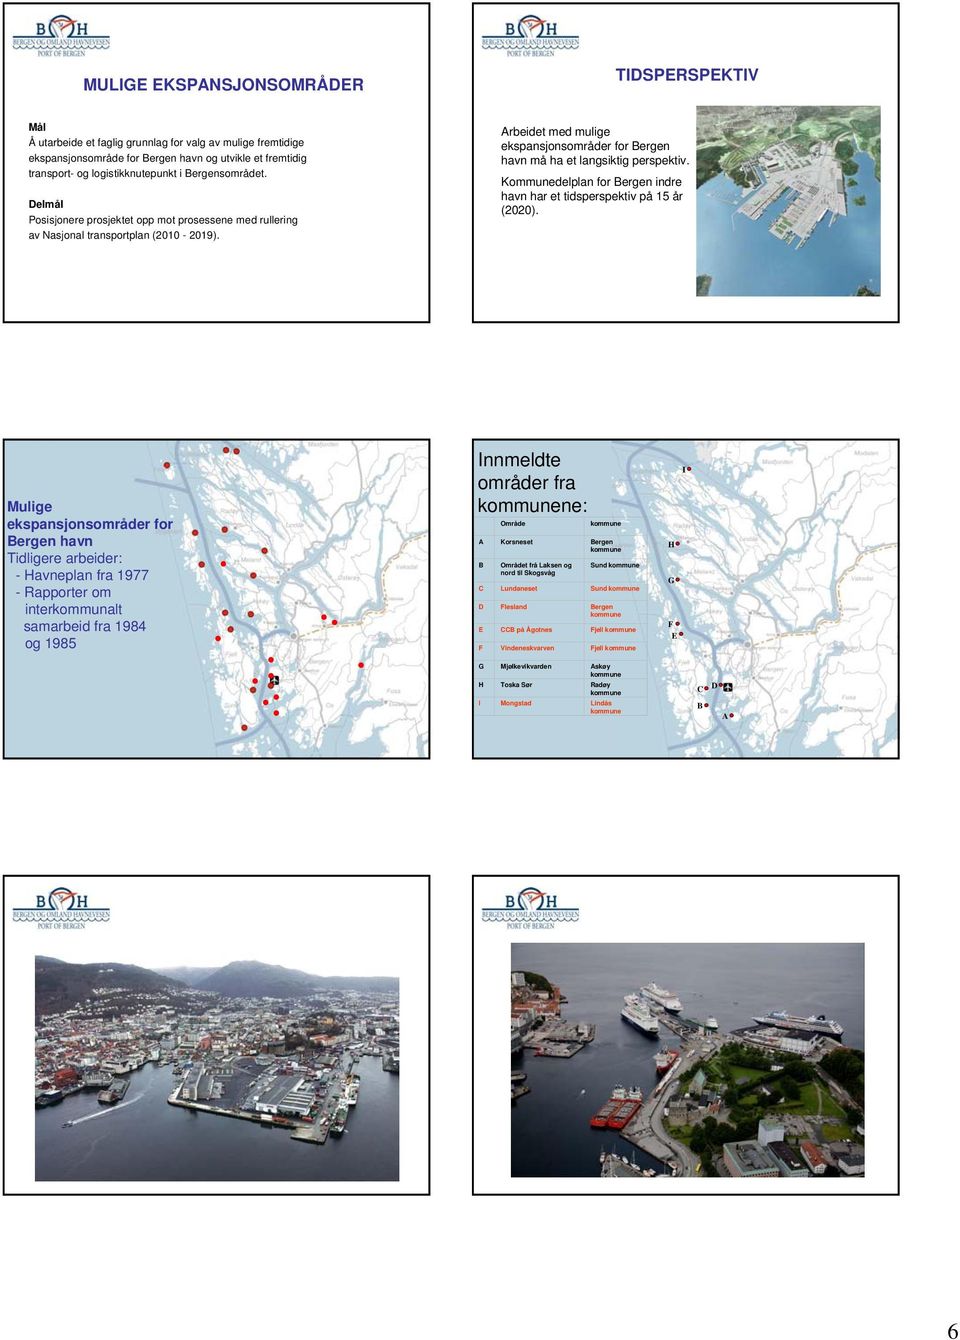 Arbeidet med mulige ekspansjonsområder for Bergen havn må ha et langsiktig perspektiv. Kommunedelplan for Bergen indre havn har et tidsperspektiv på 15 år (2020).